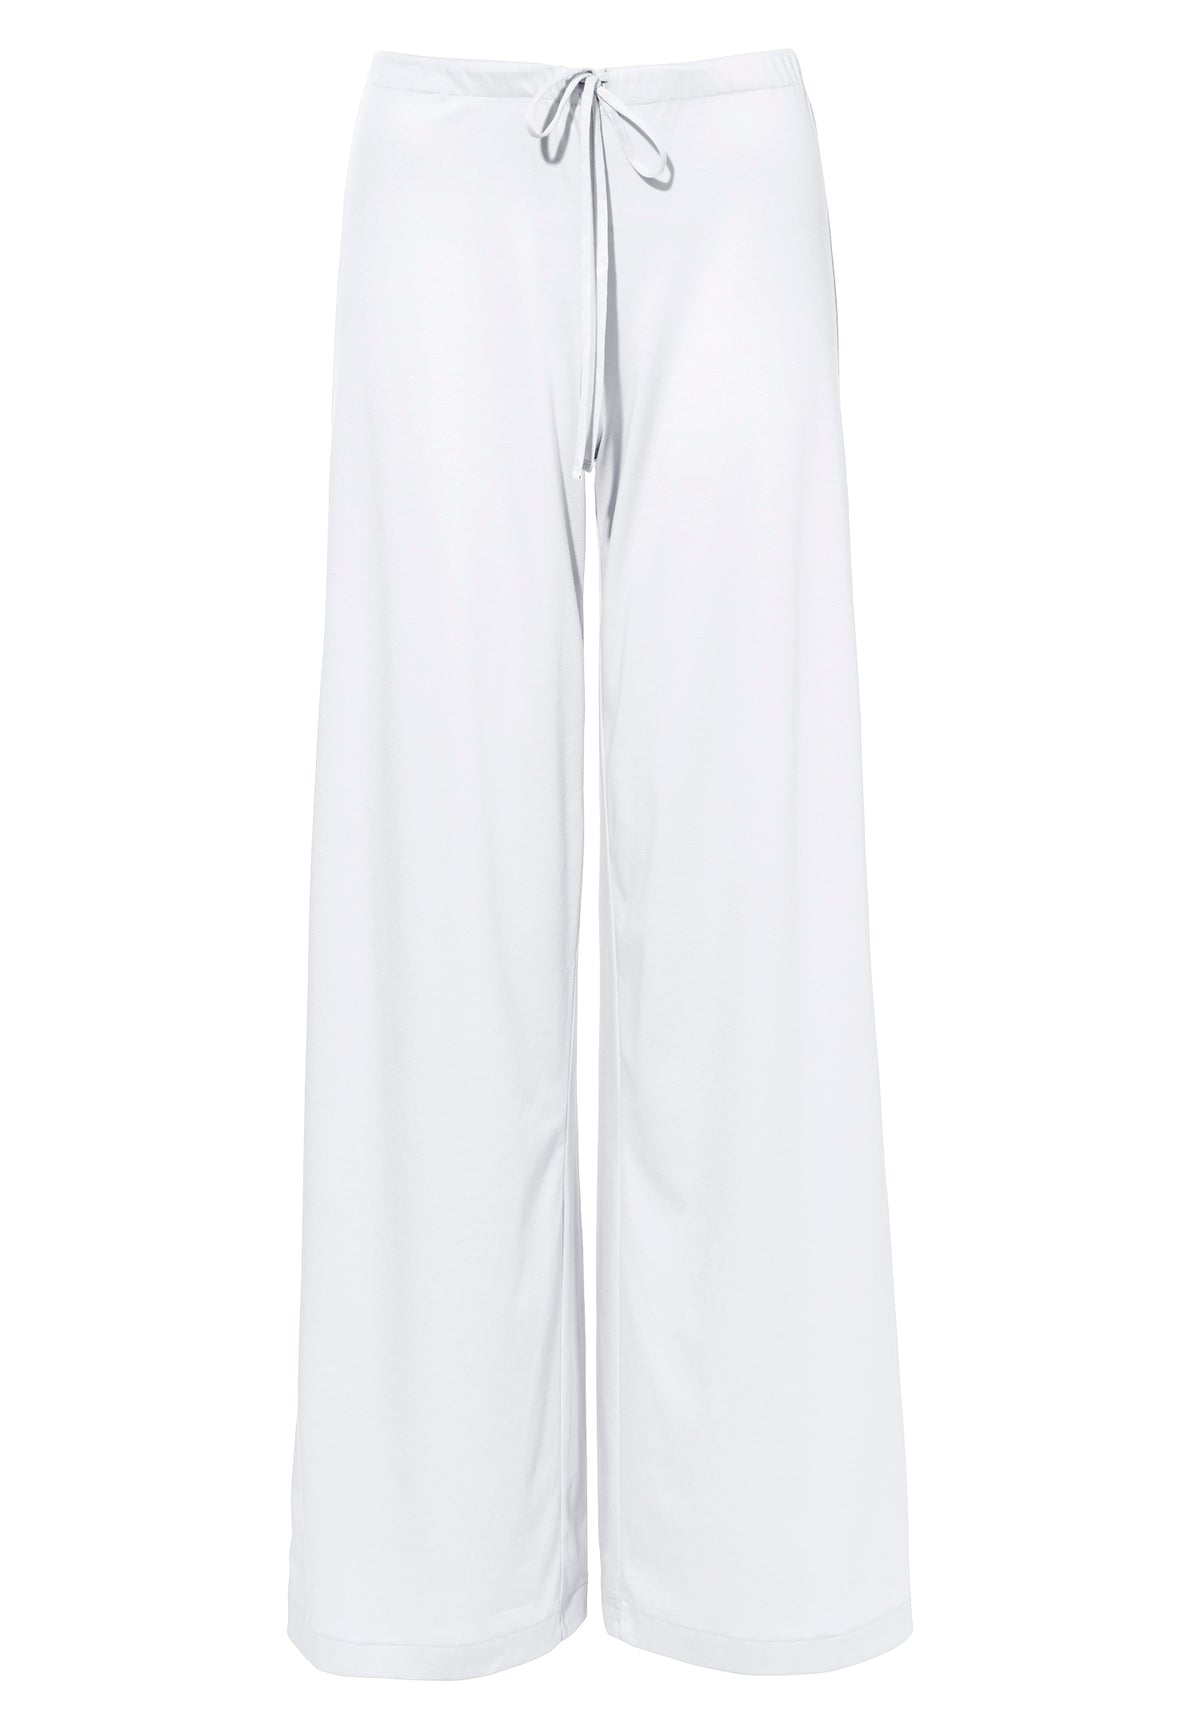 Sea Island | Pants Long - white